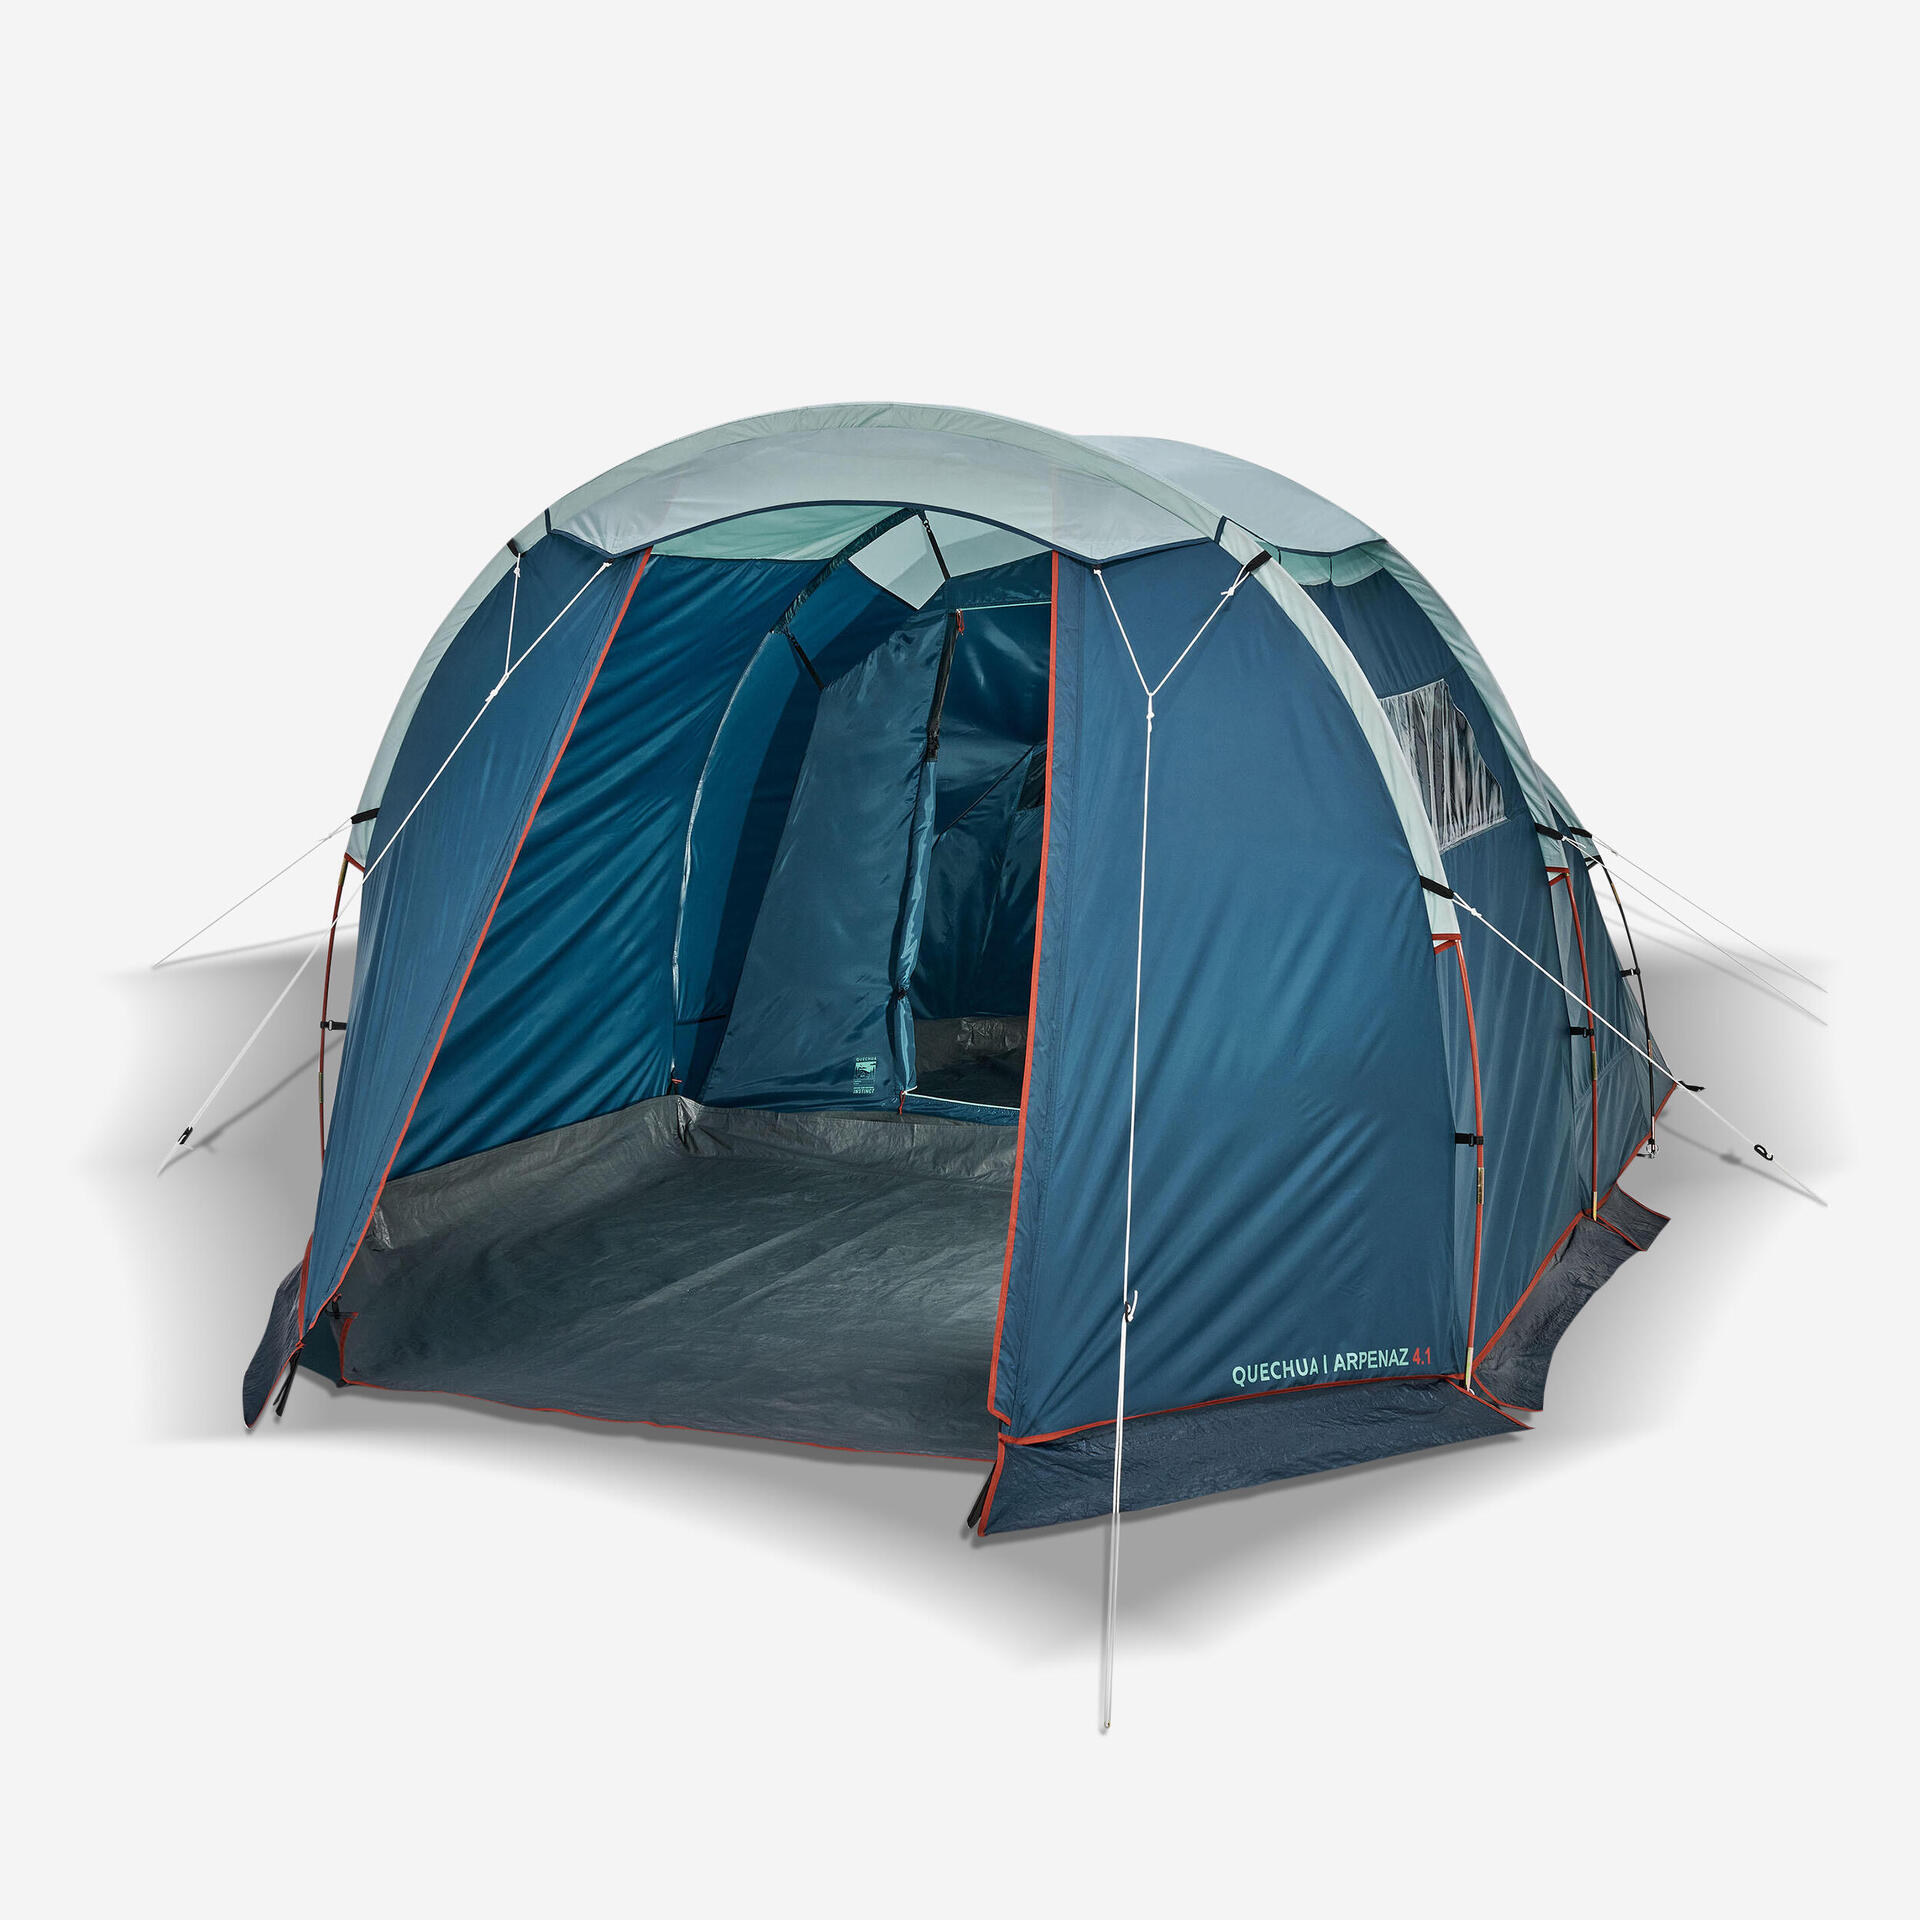 comment-choisir-tente-camping-trekking-tente-arceaux-arpenaz